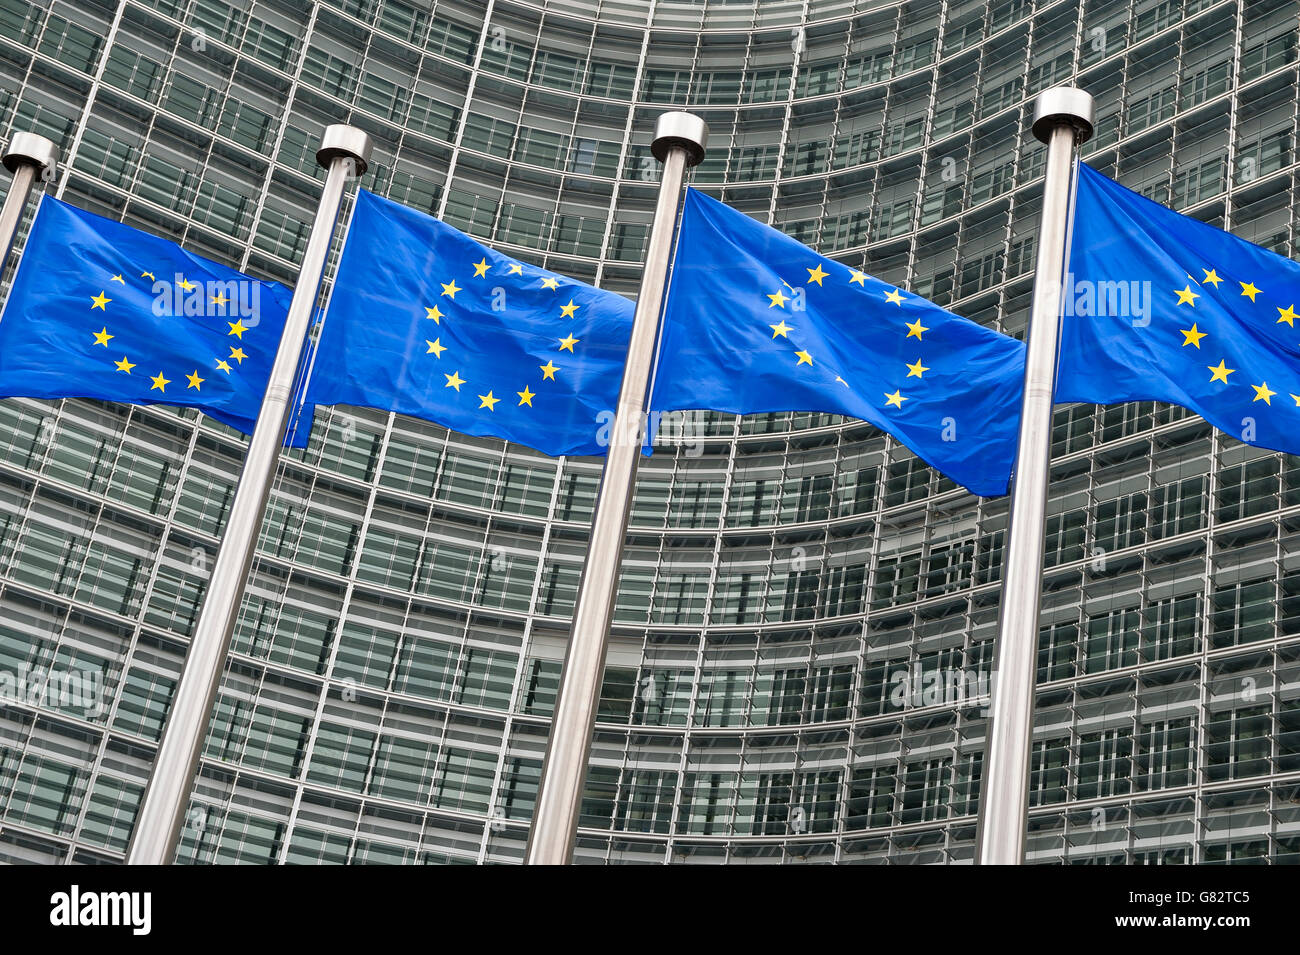 Reihe Der Eu Europaischen Union Fahnen Vor Verwaltungsgebaude Am Hauptsitz Eu In Brussel Belgien Stockfotografie Alamy